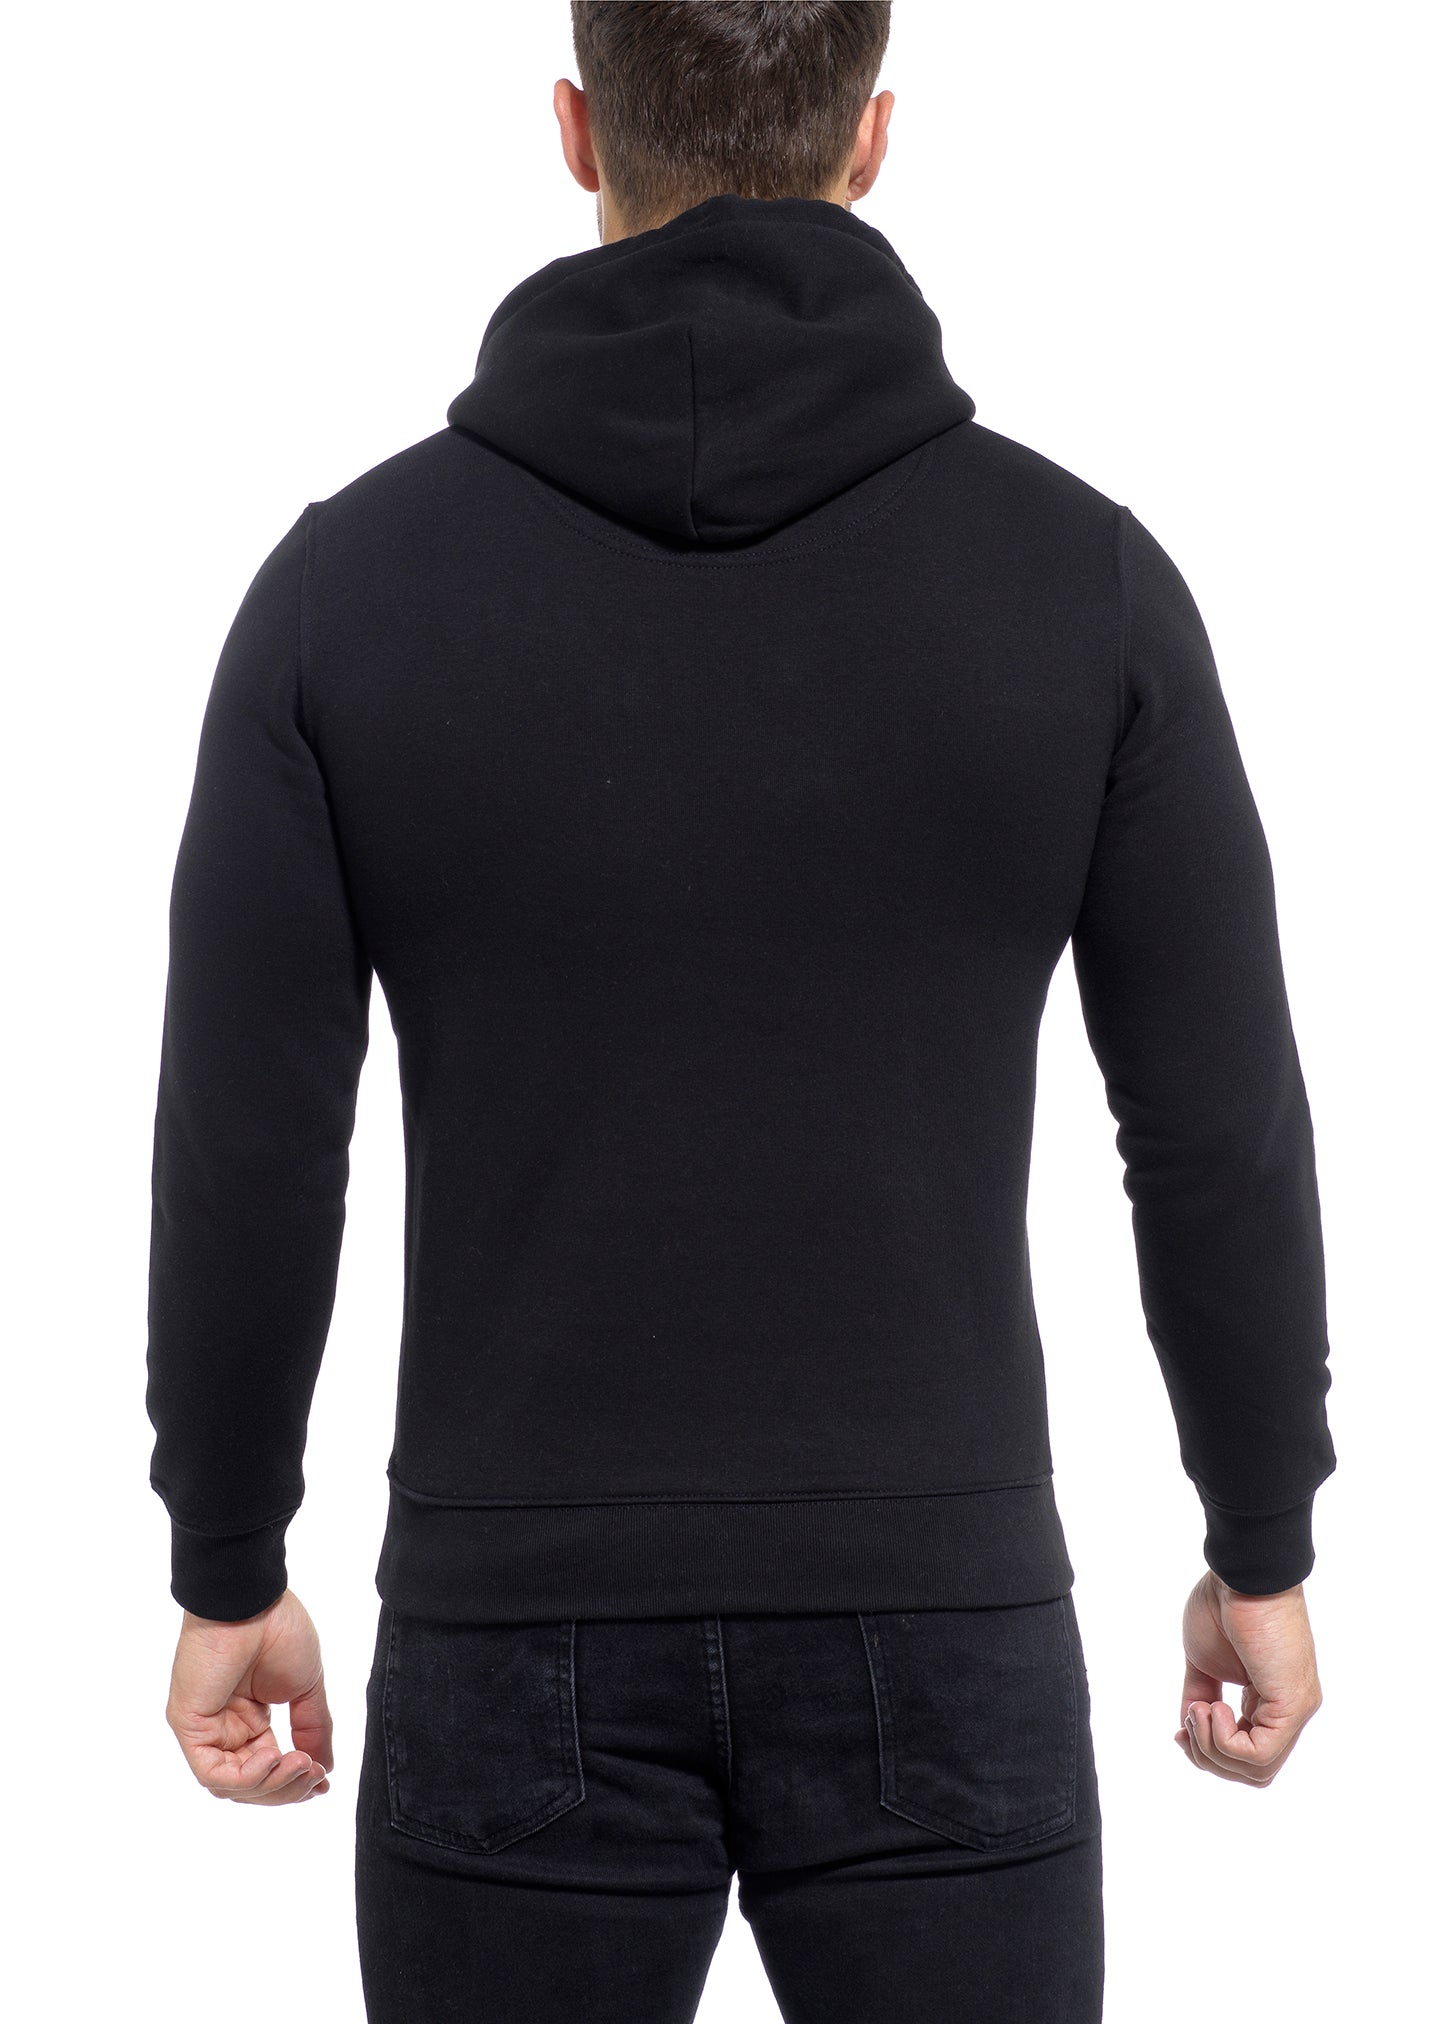 Muscle Fit Black hoodies